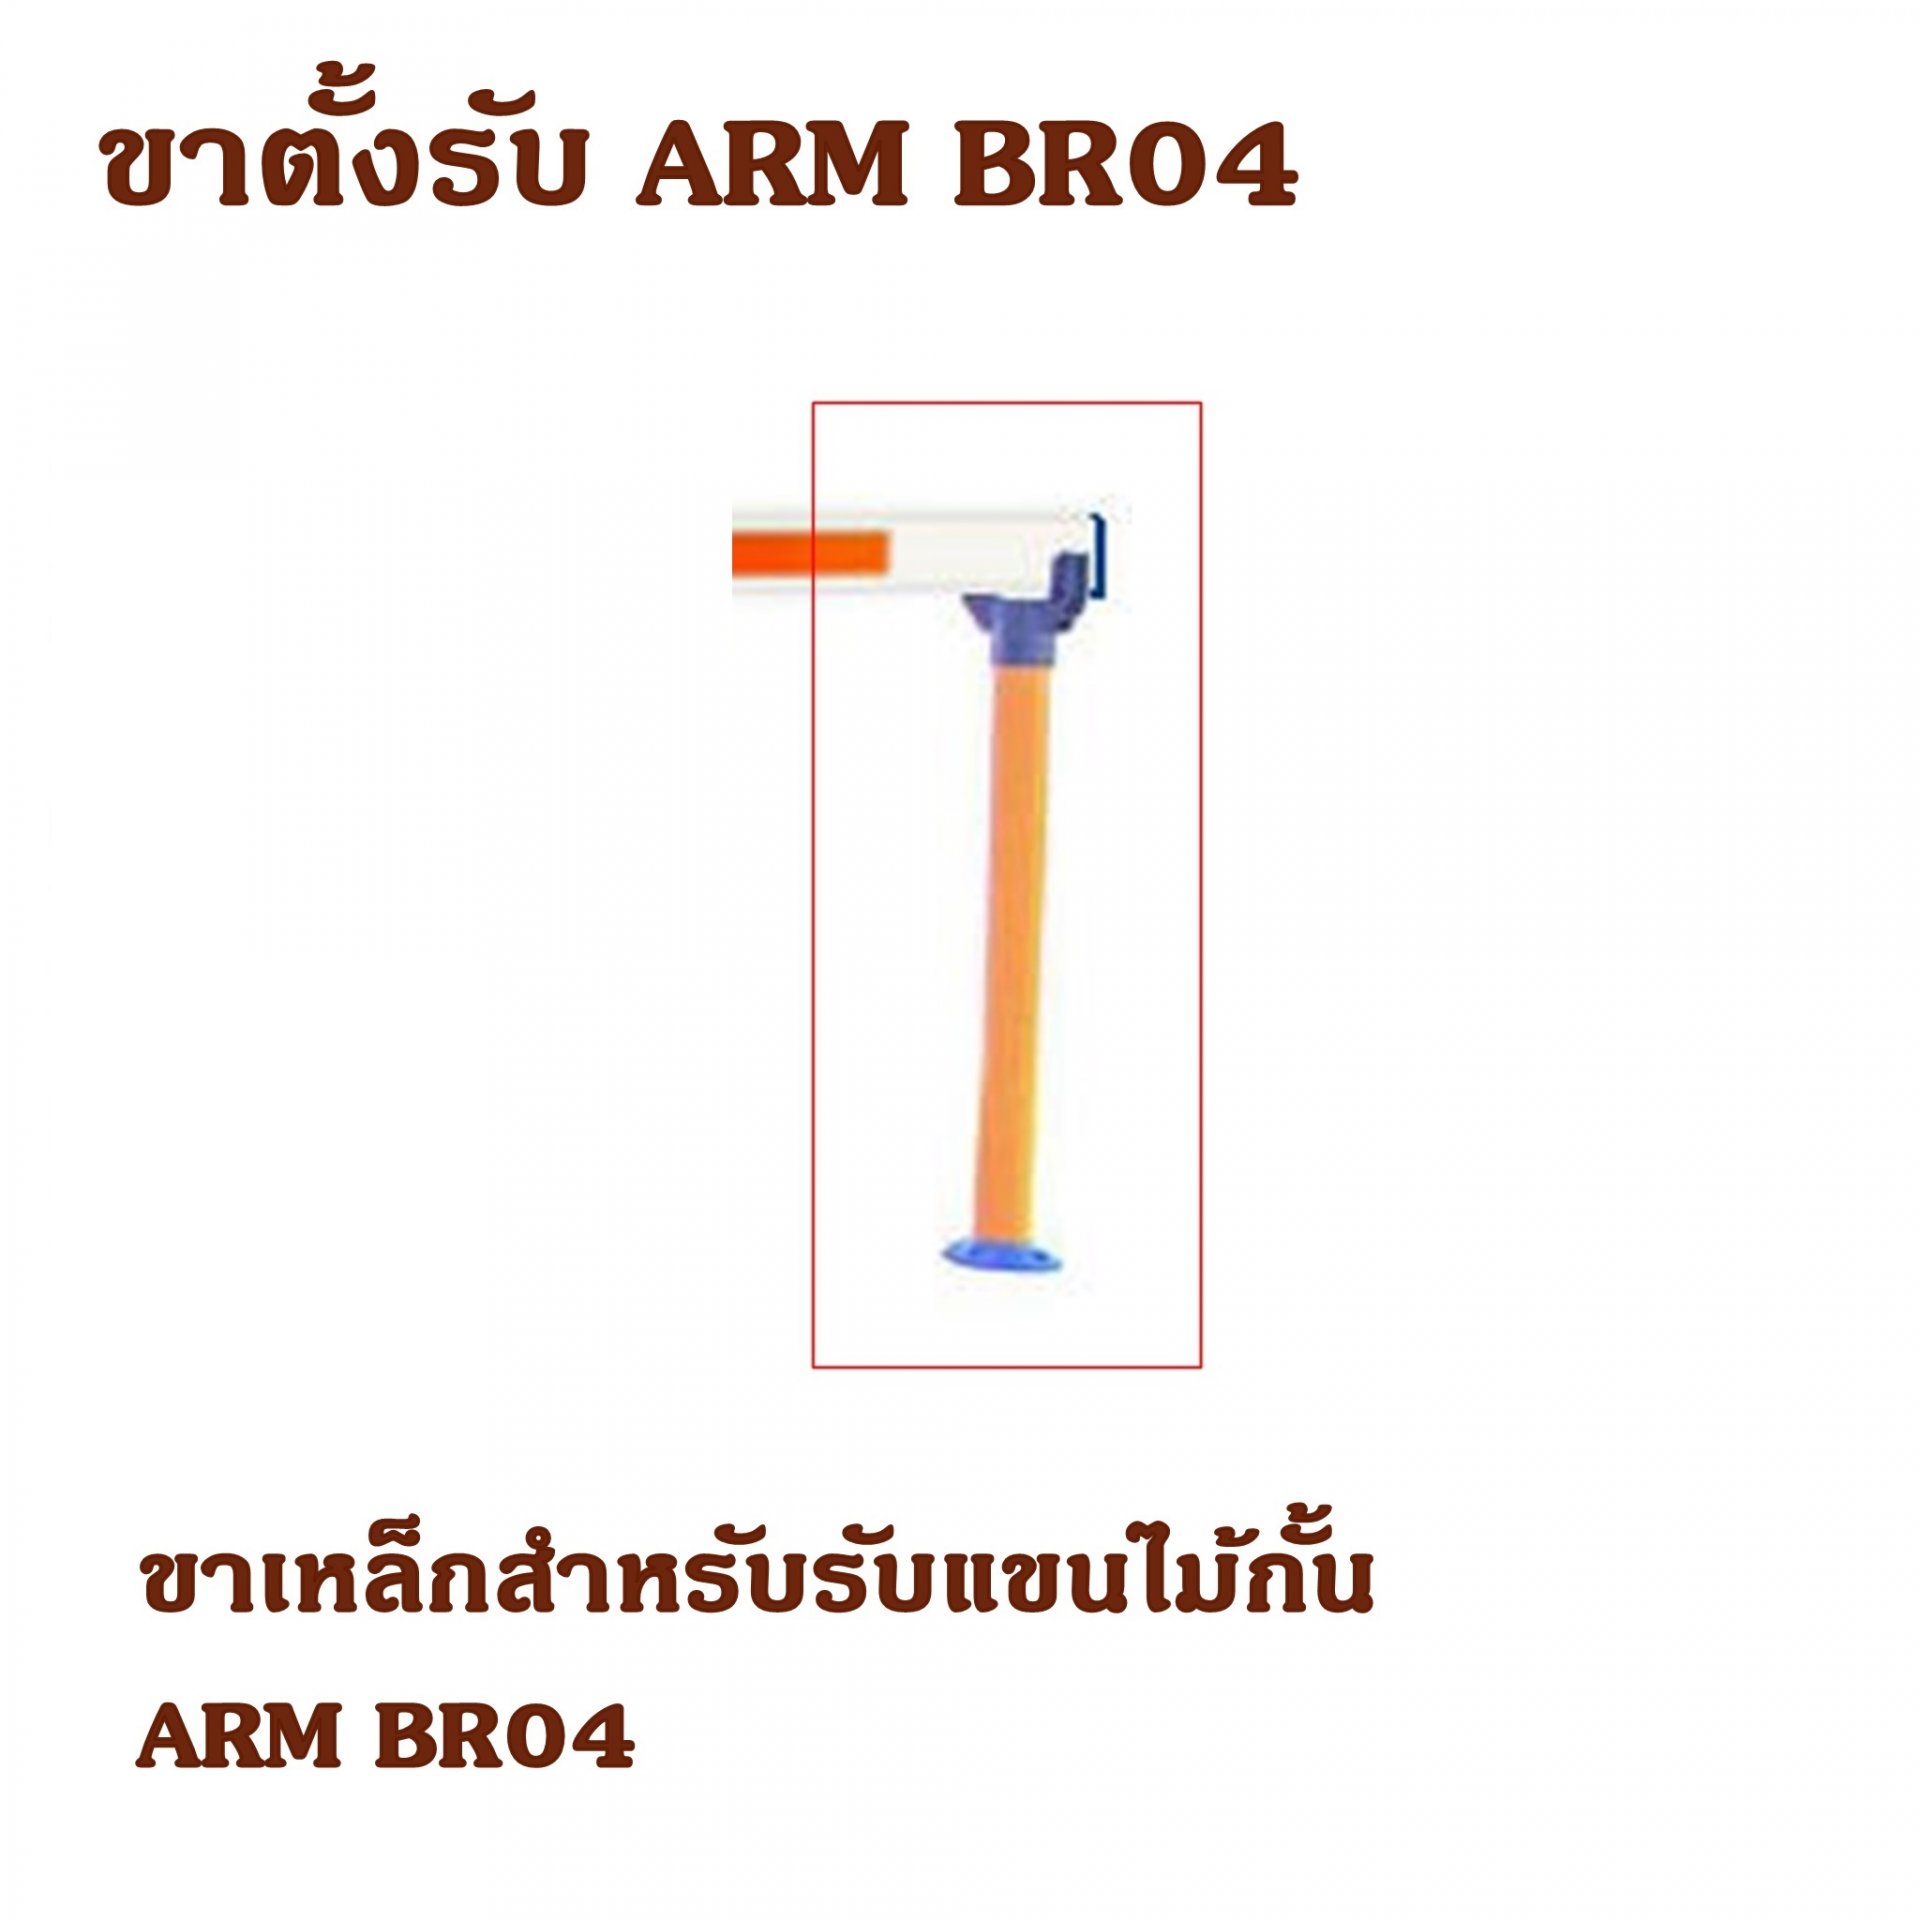 ขาตั้งรับ ARM BR04